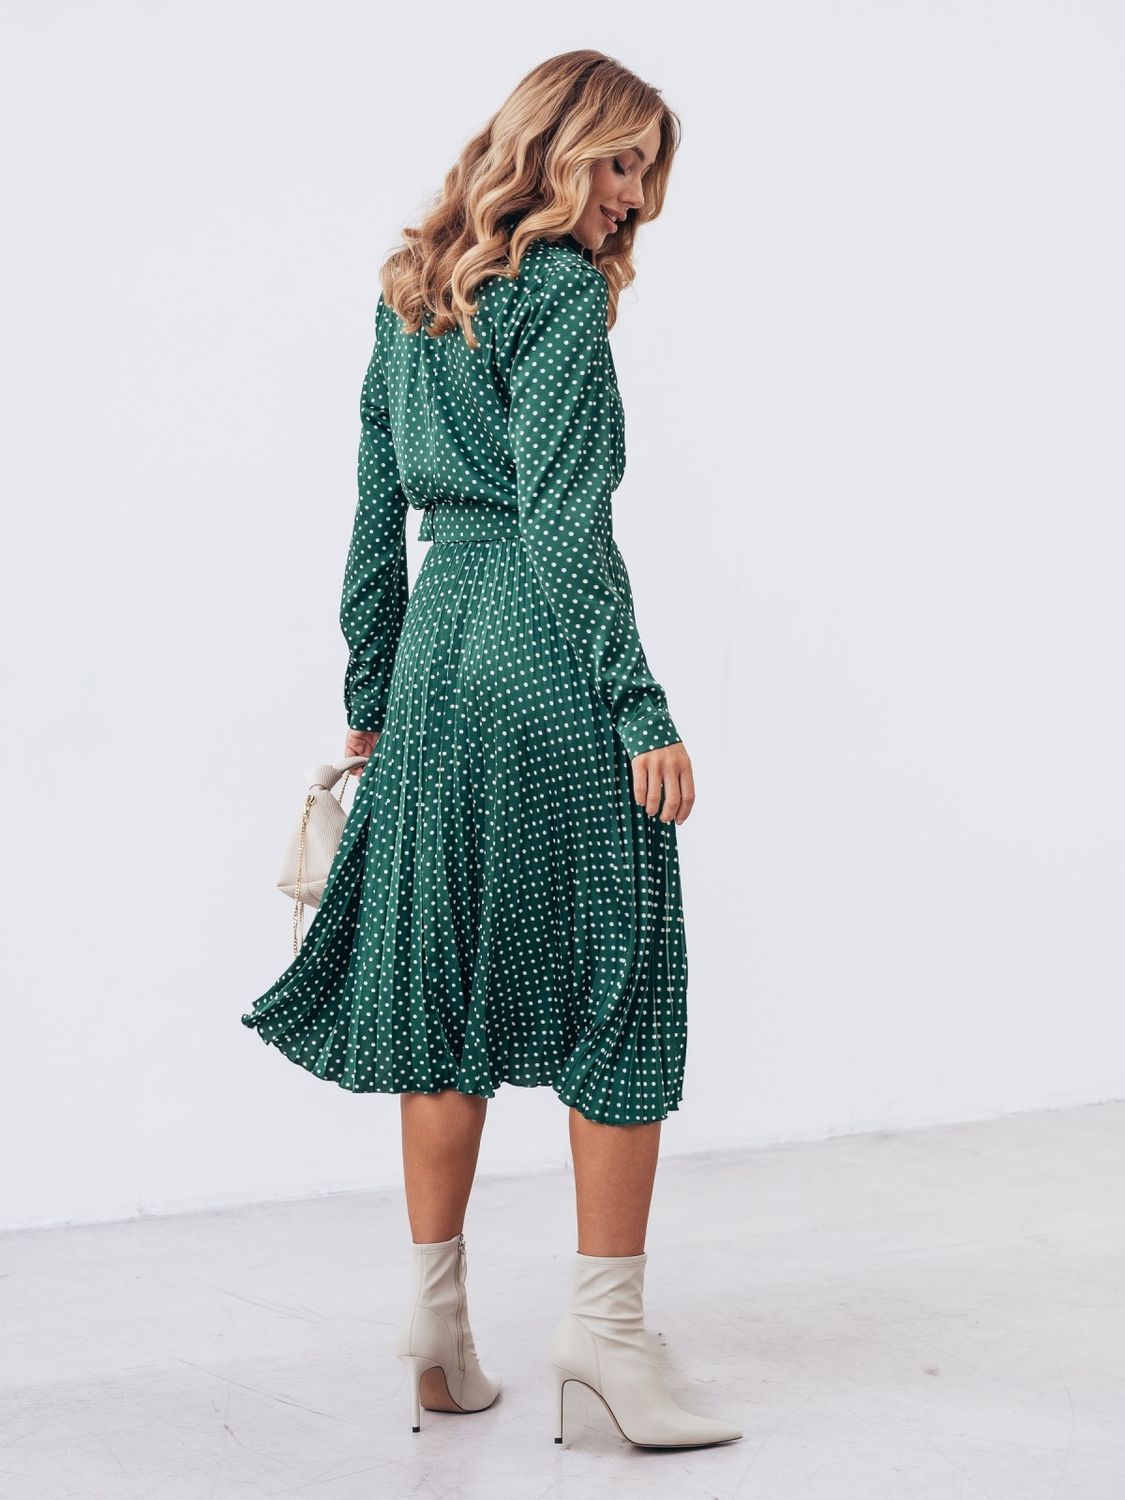 Шовкове плаття міді зі спідницею-плісе зеленого кольору - фото